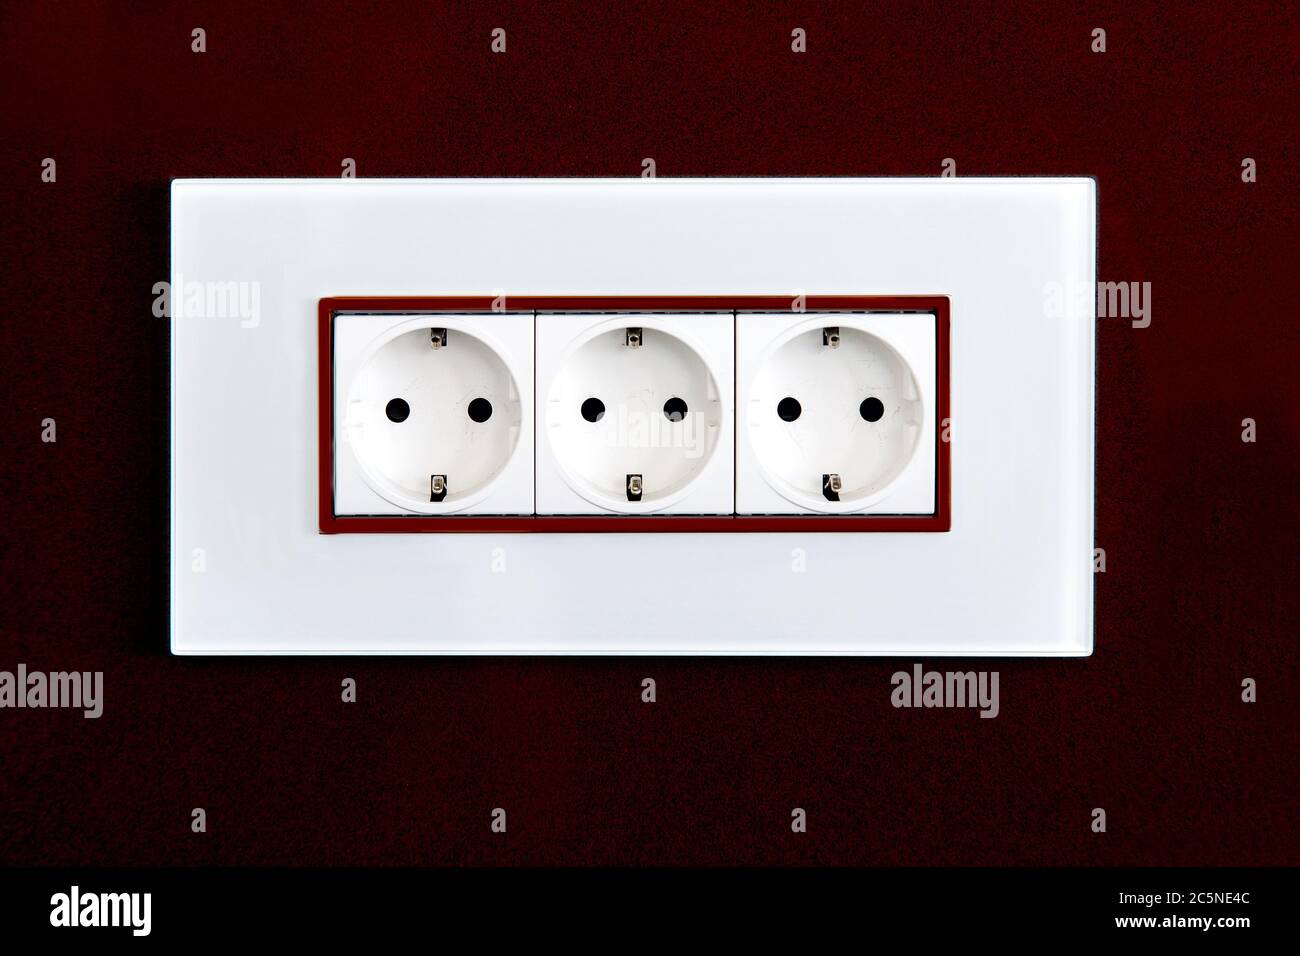 Steckdose mit Steckern für Standard-Stecker Typ F in weißem Kunststoffgehäuse an einer burgunderroten, glänzenden Steinwand. Stockfoto